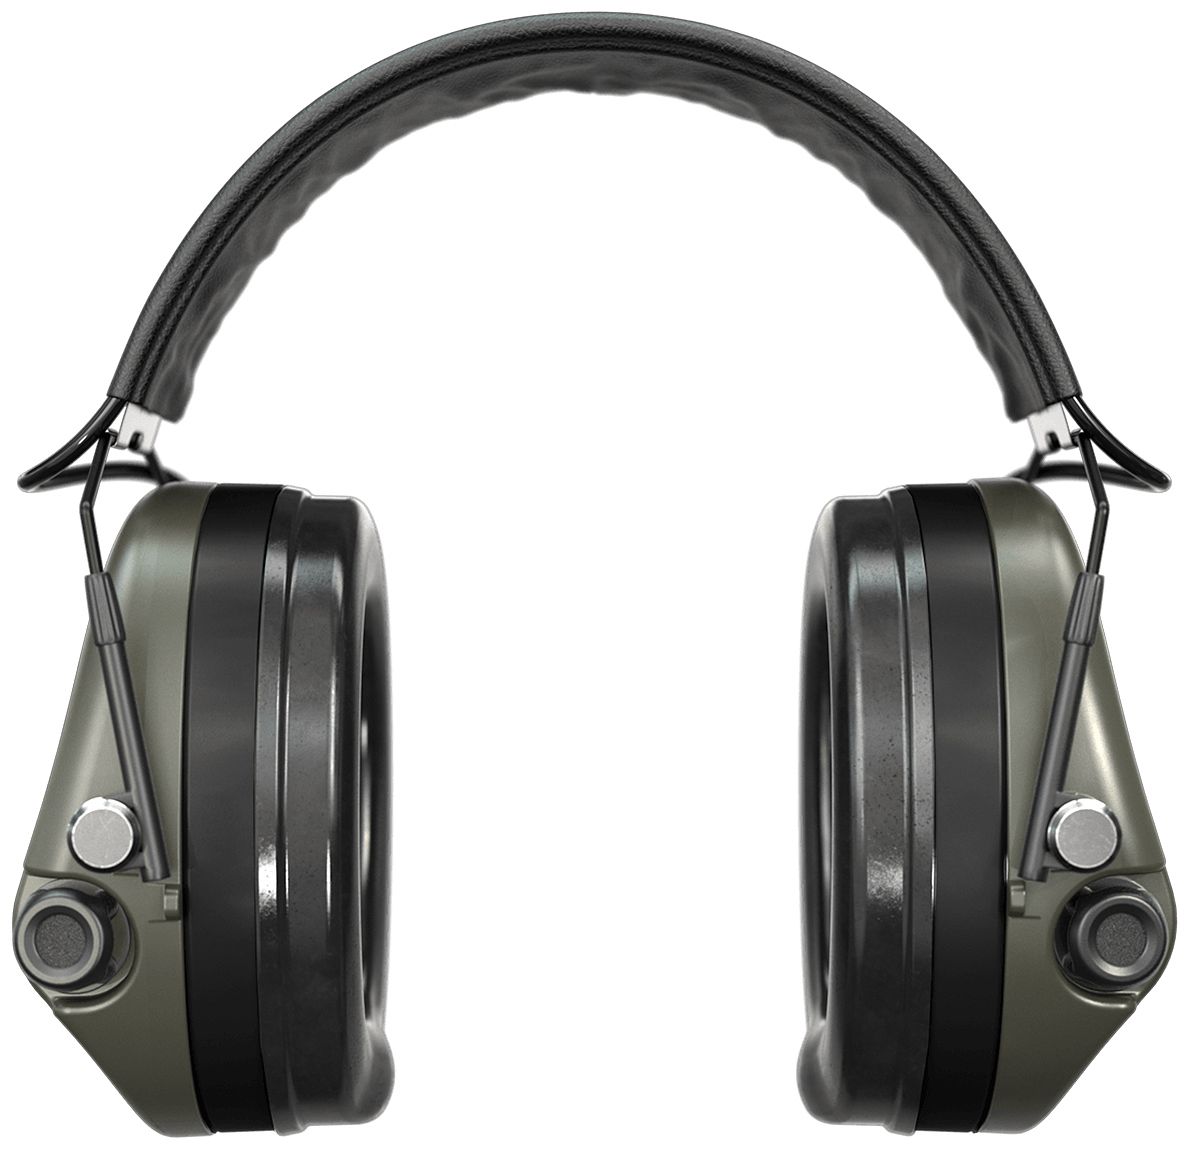 Sordin Supreme MIL SFA Gehörschutz - aktiver Militär-Gehörschützer - 26-32 dB SNR dank Dämmungs-Ring - grüne Kapseln